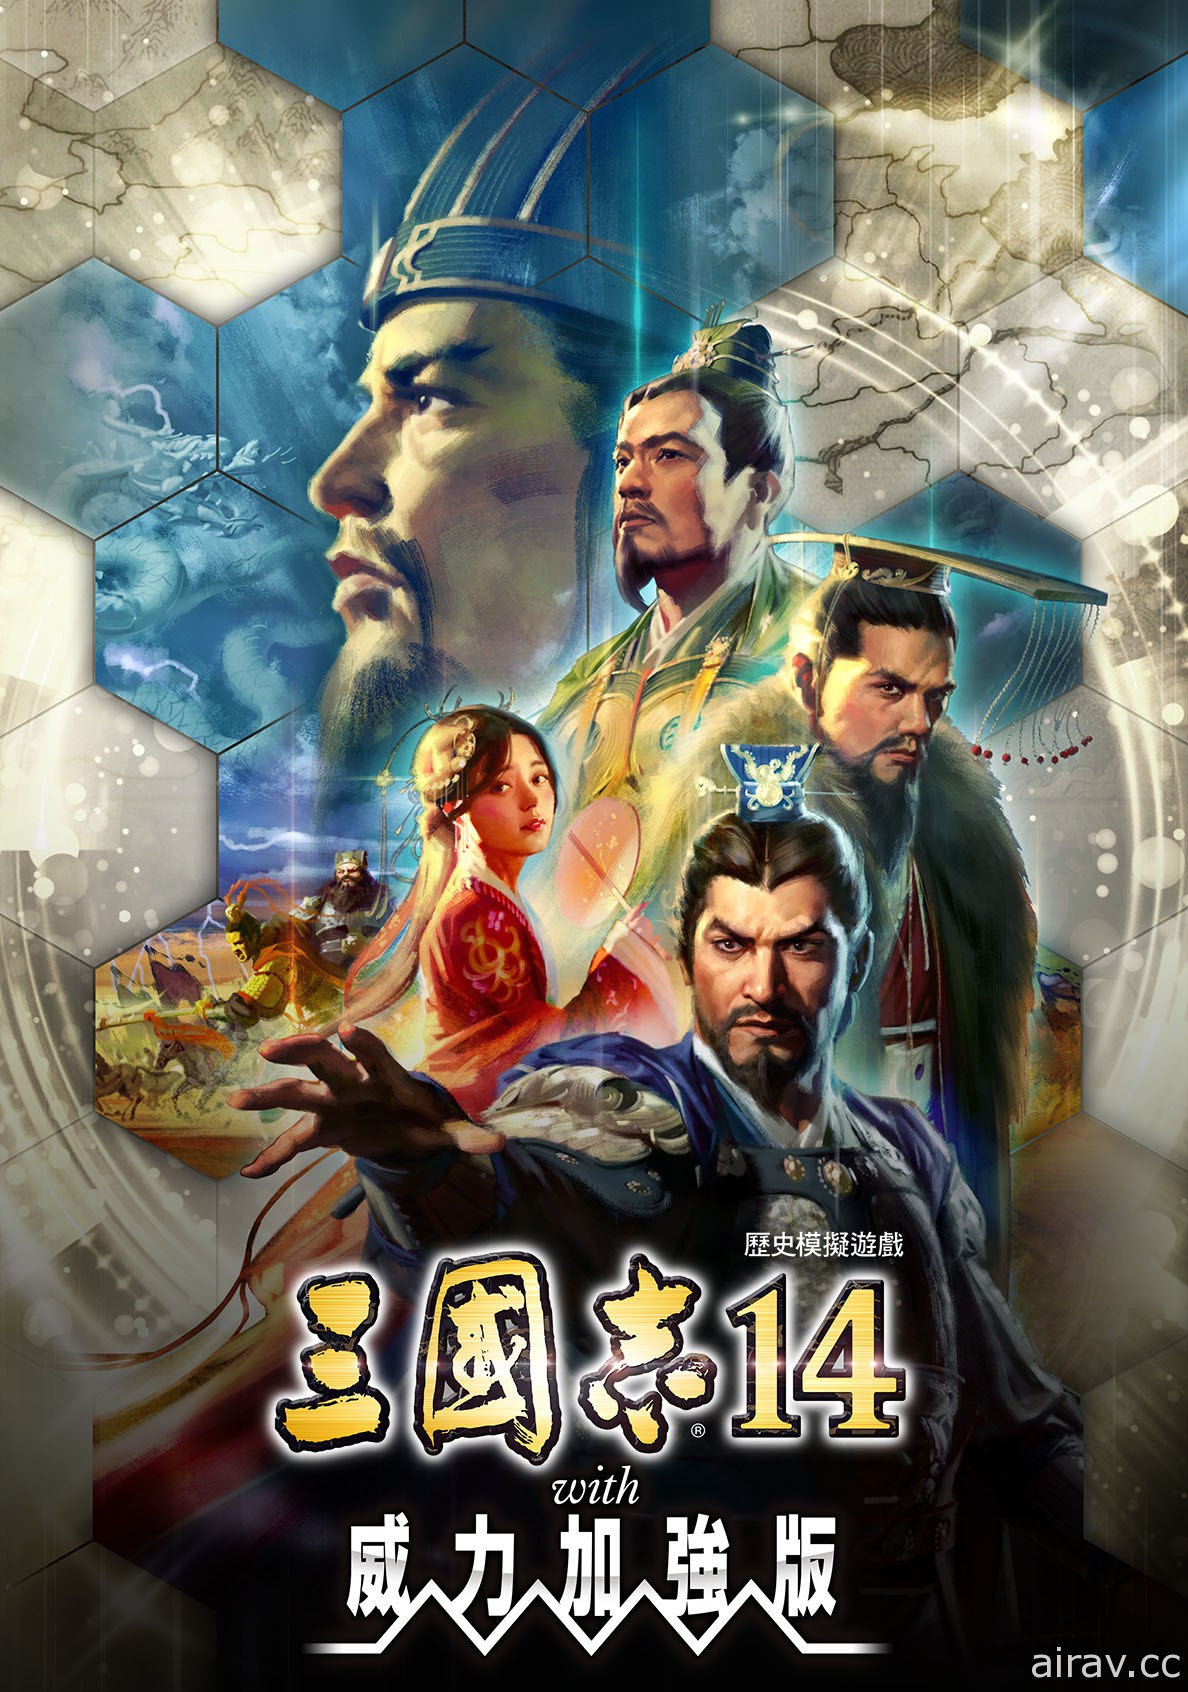 《三國志 14 with 威力加強版》推出假想劇本「華北霸者」與付費編輯功能第 4 彈